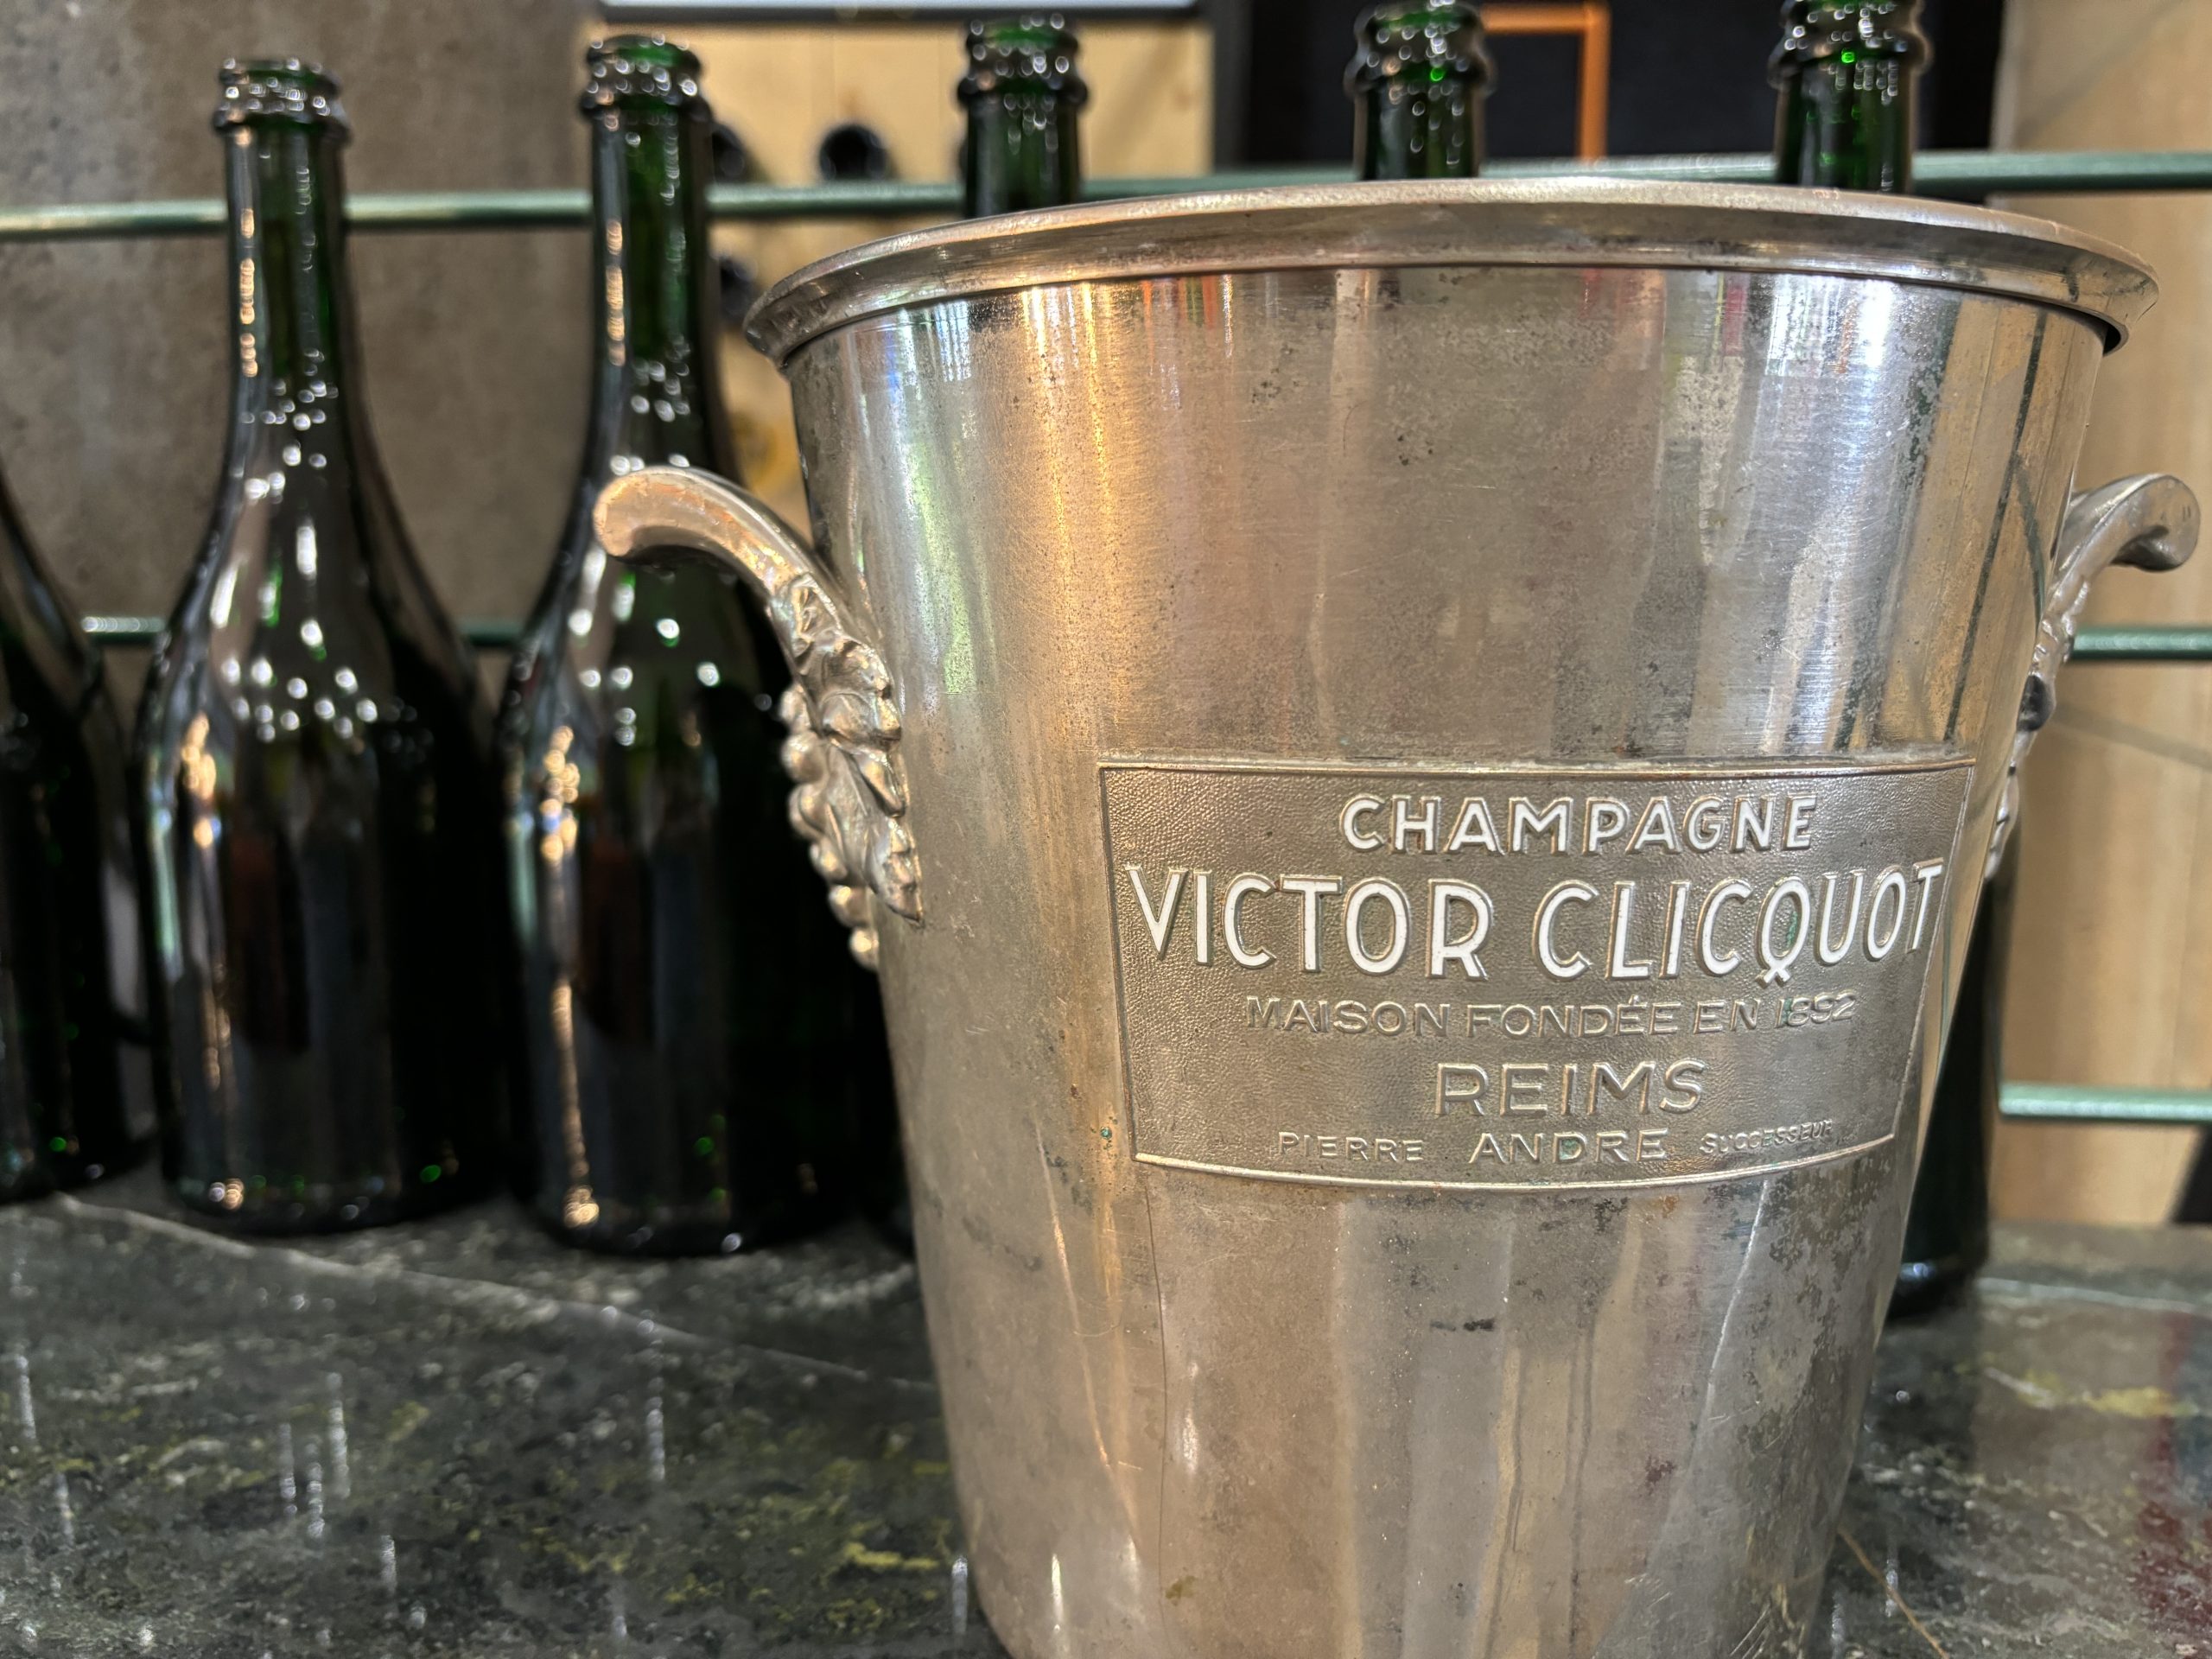 Champagne Victor Clicquot jéghűtő vödör – Egy igazi gyűjtői különlegesség – 112.900.-Ft